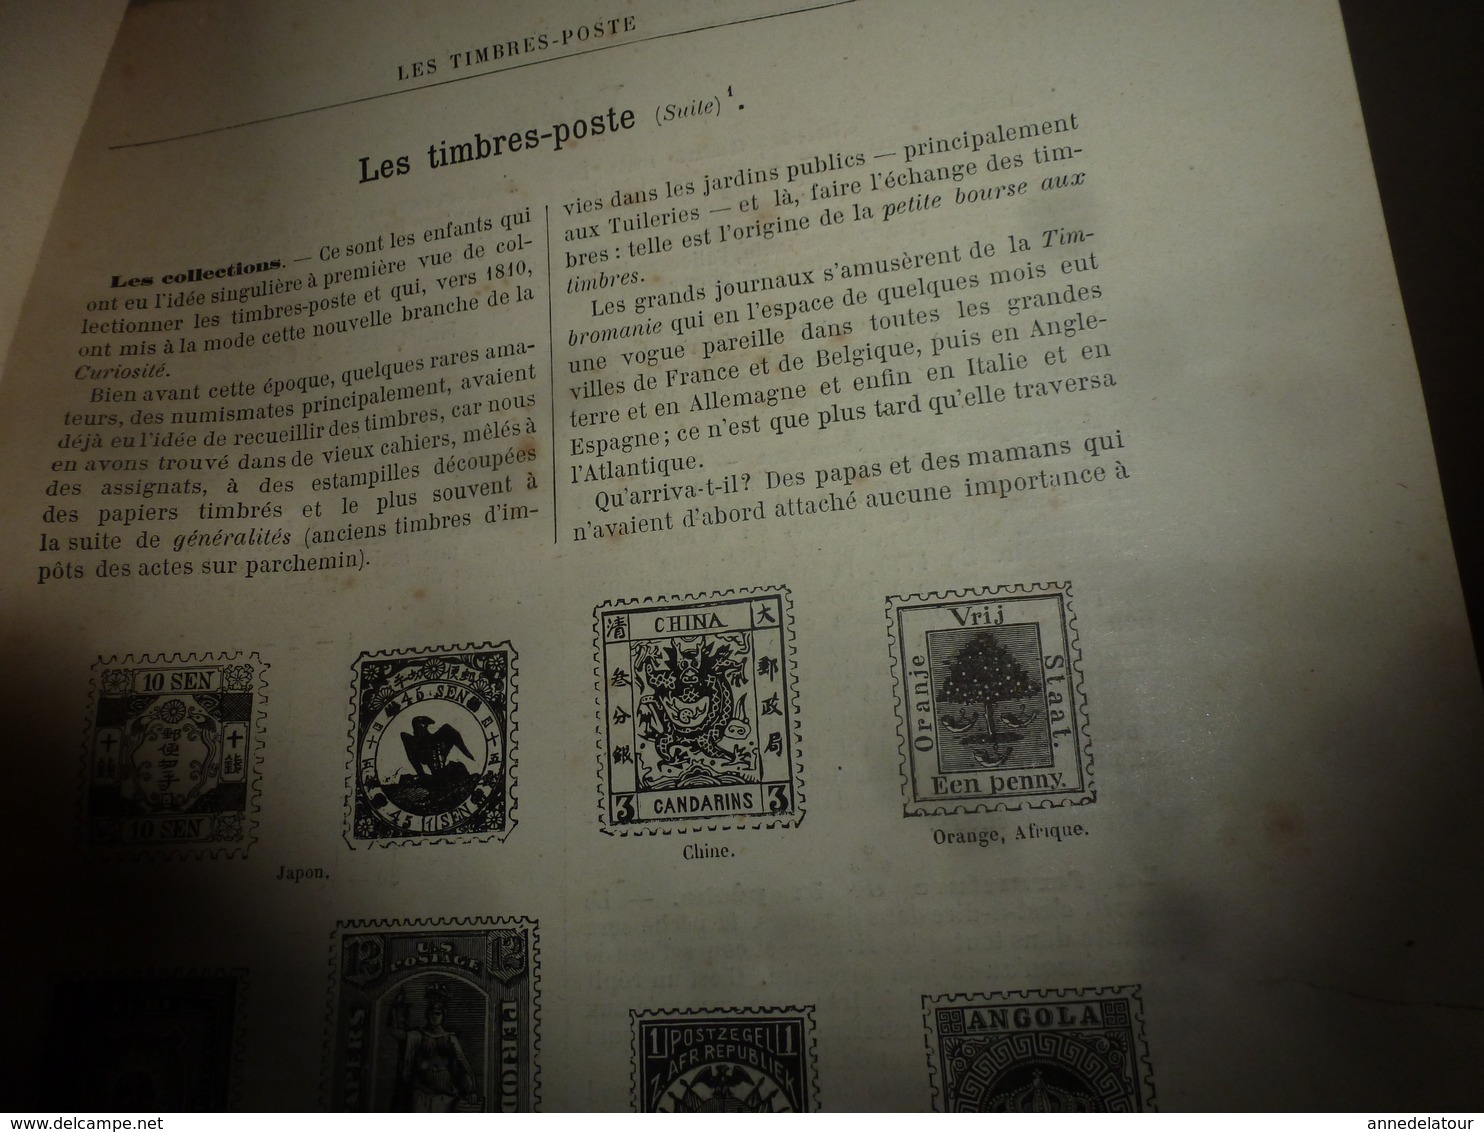 1890 Le Petit Français illustré:A bord de LA BRETAGNE avec Kermadec;Charles-Quint le français;Phare de l'ïle de Ré; etc